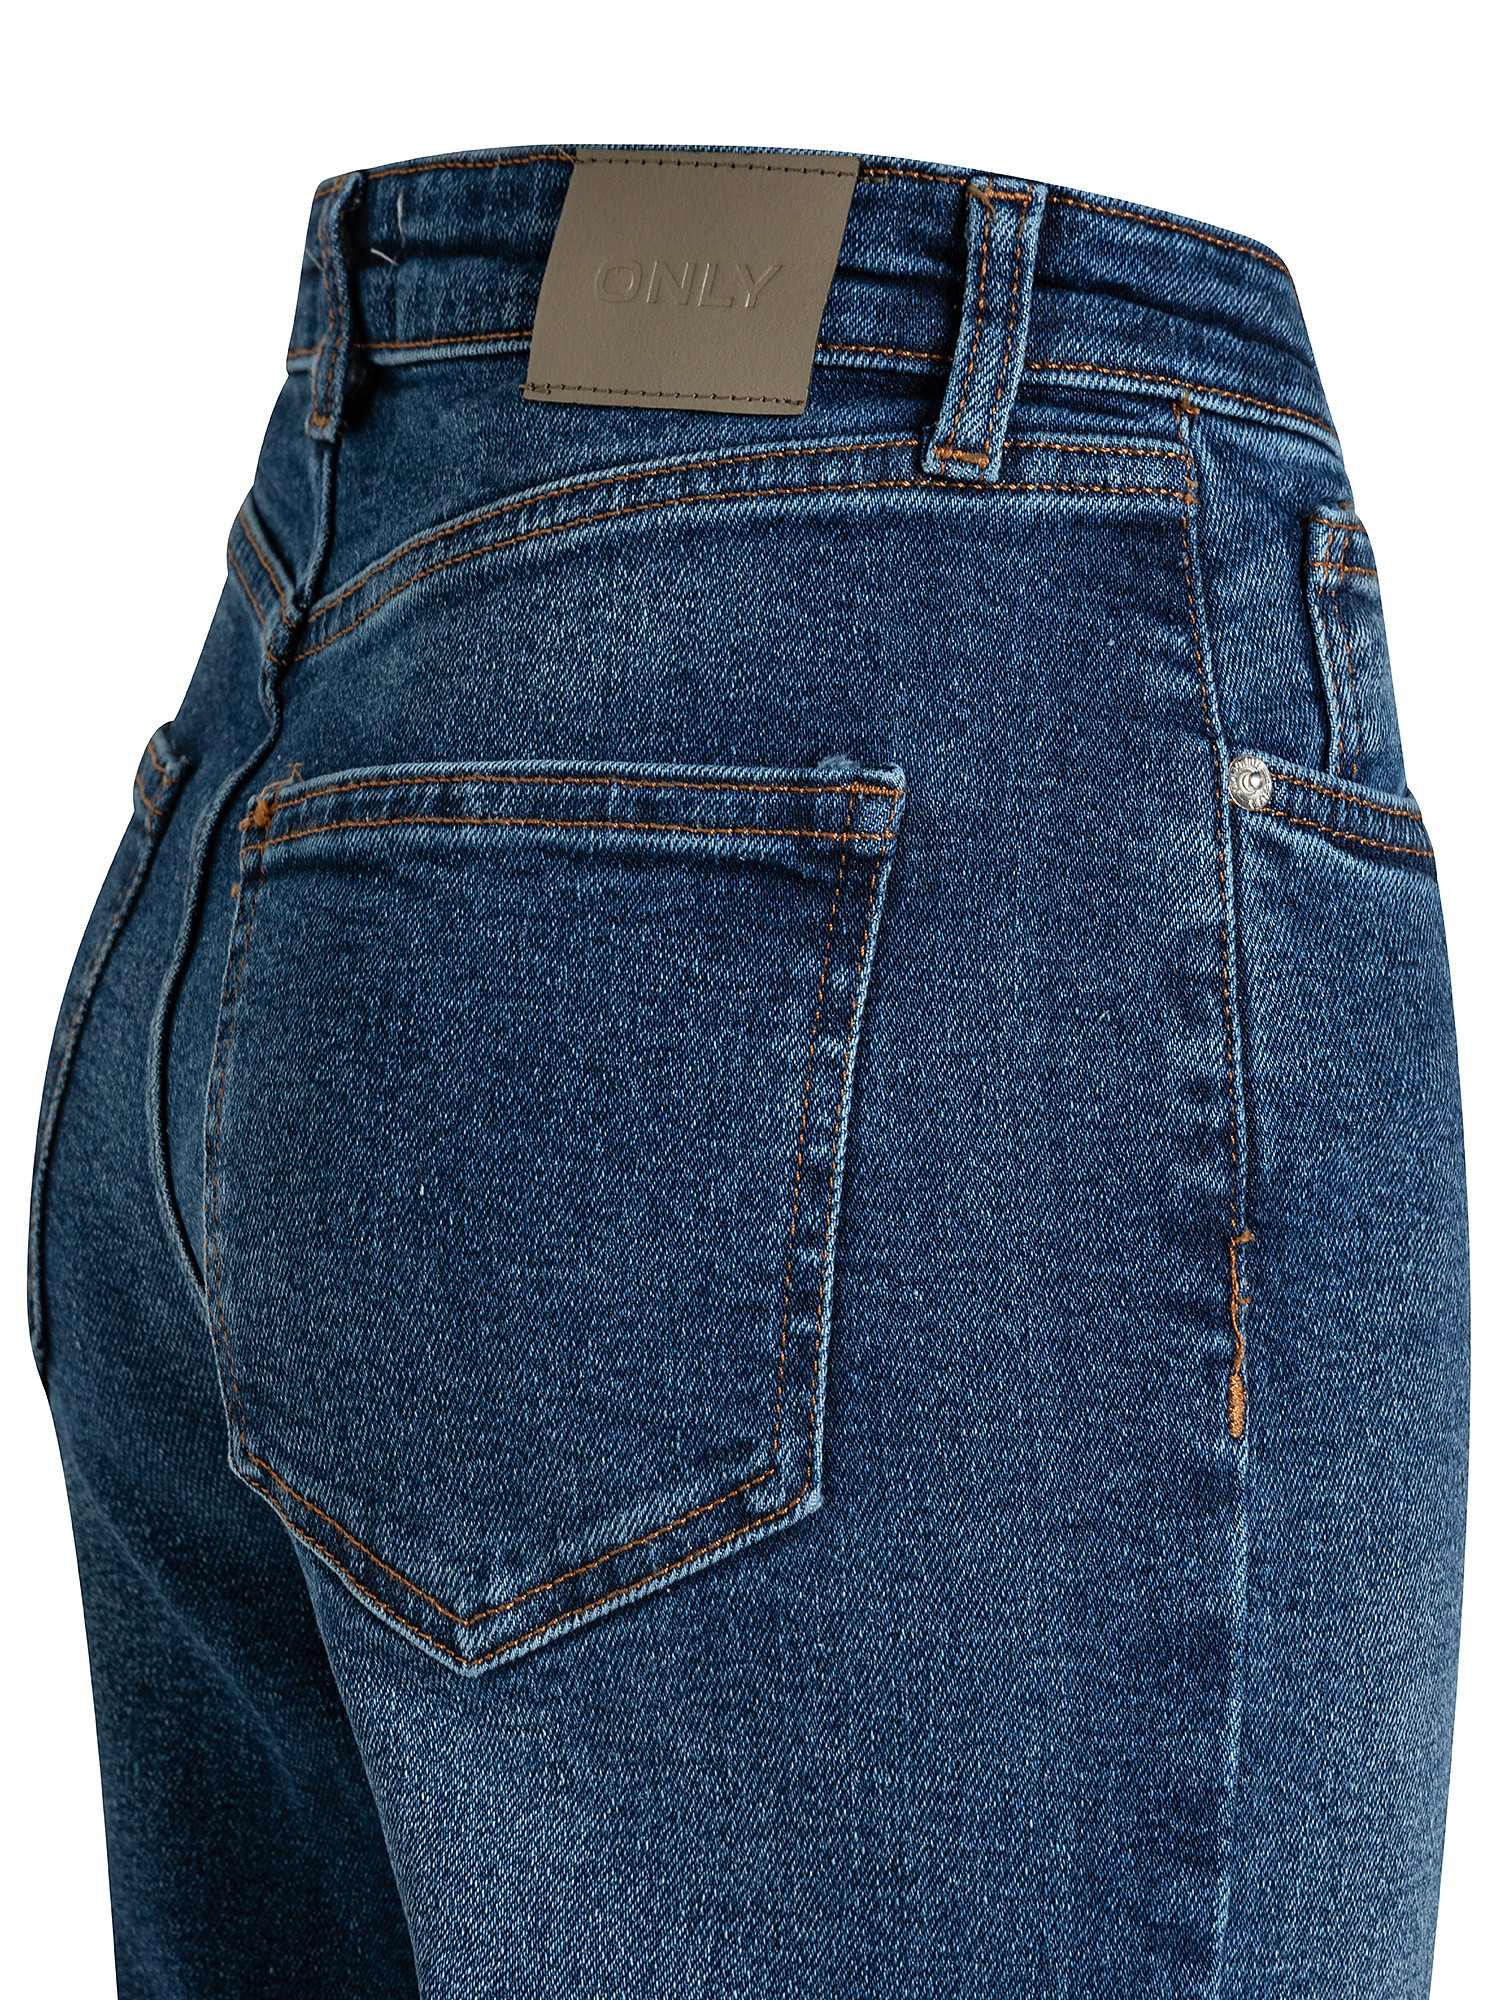 Jeans modello wide leg, Denim, large image number 2